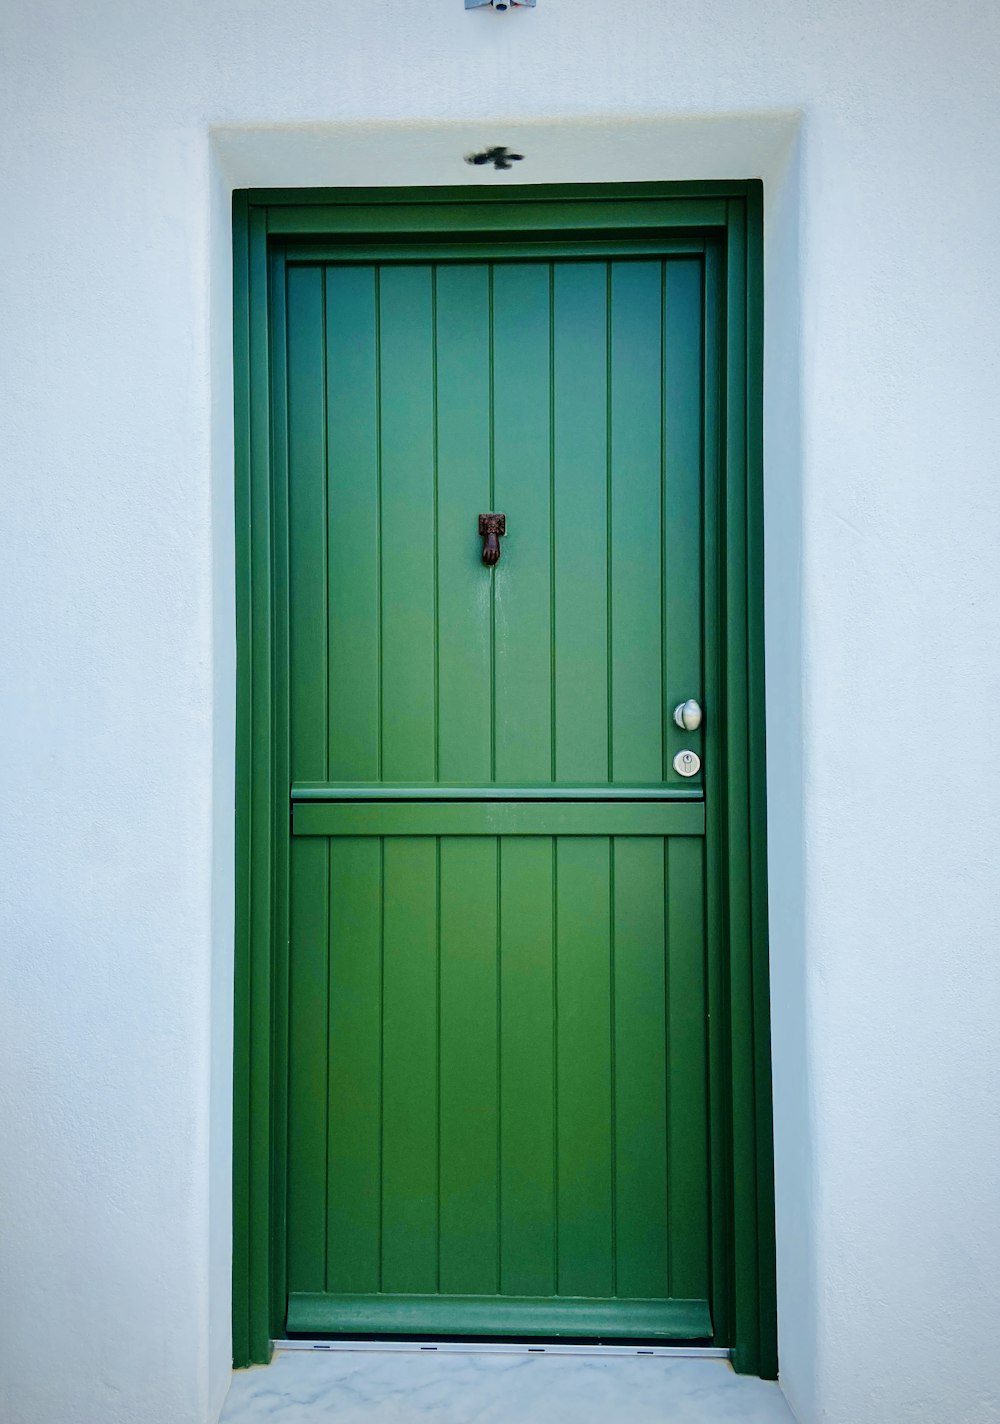 blue wooden door with red door knob